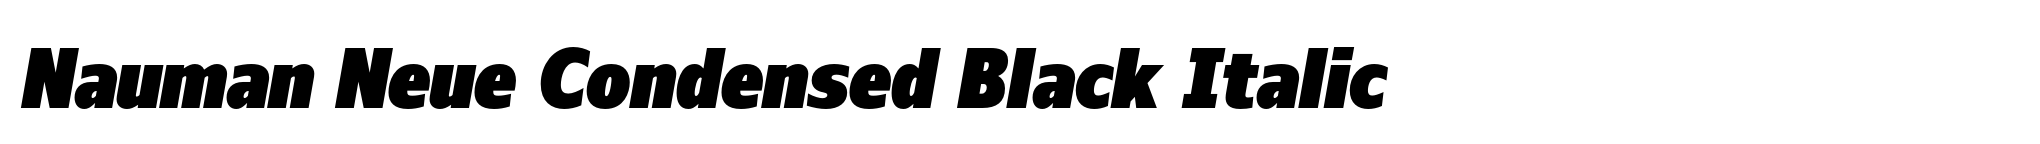 Nauman Neue Condensed Black Italic image